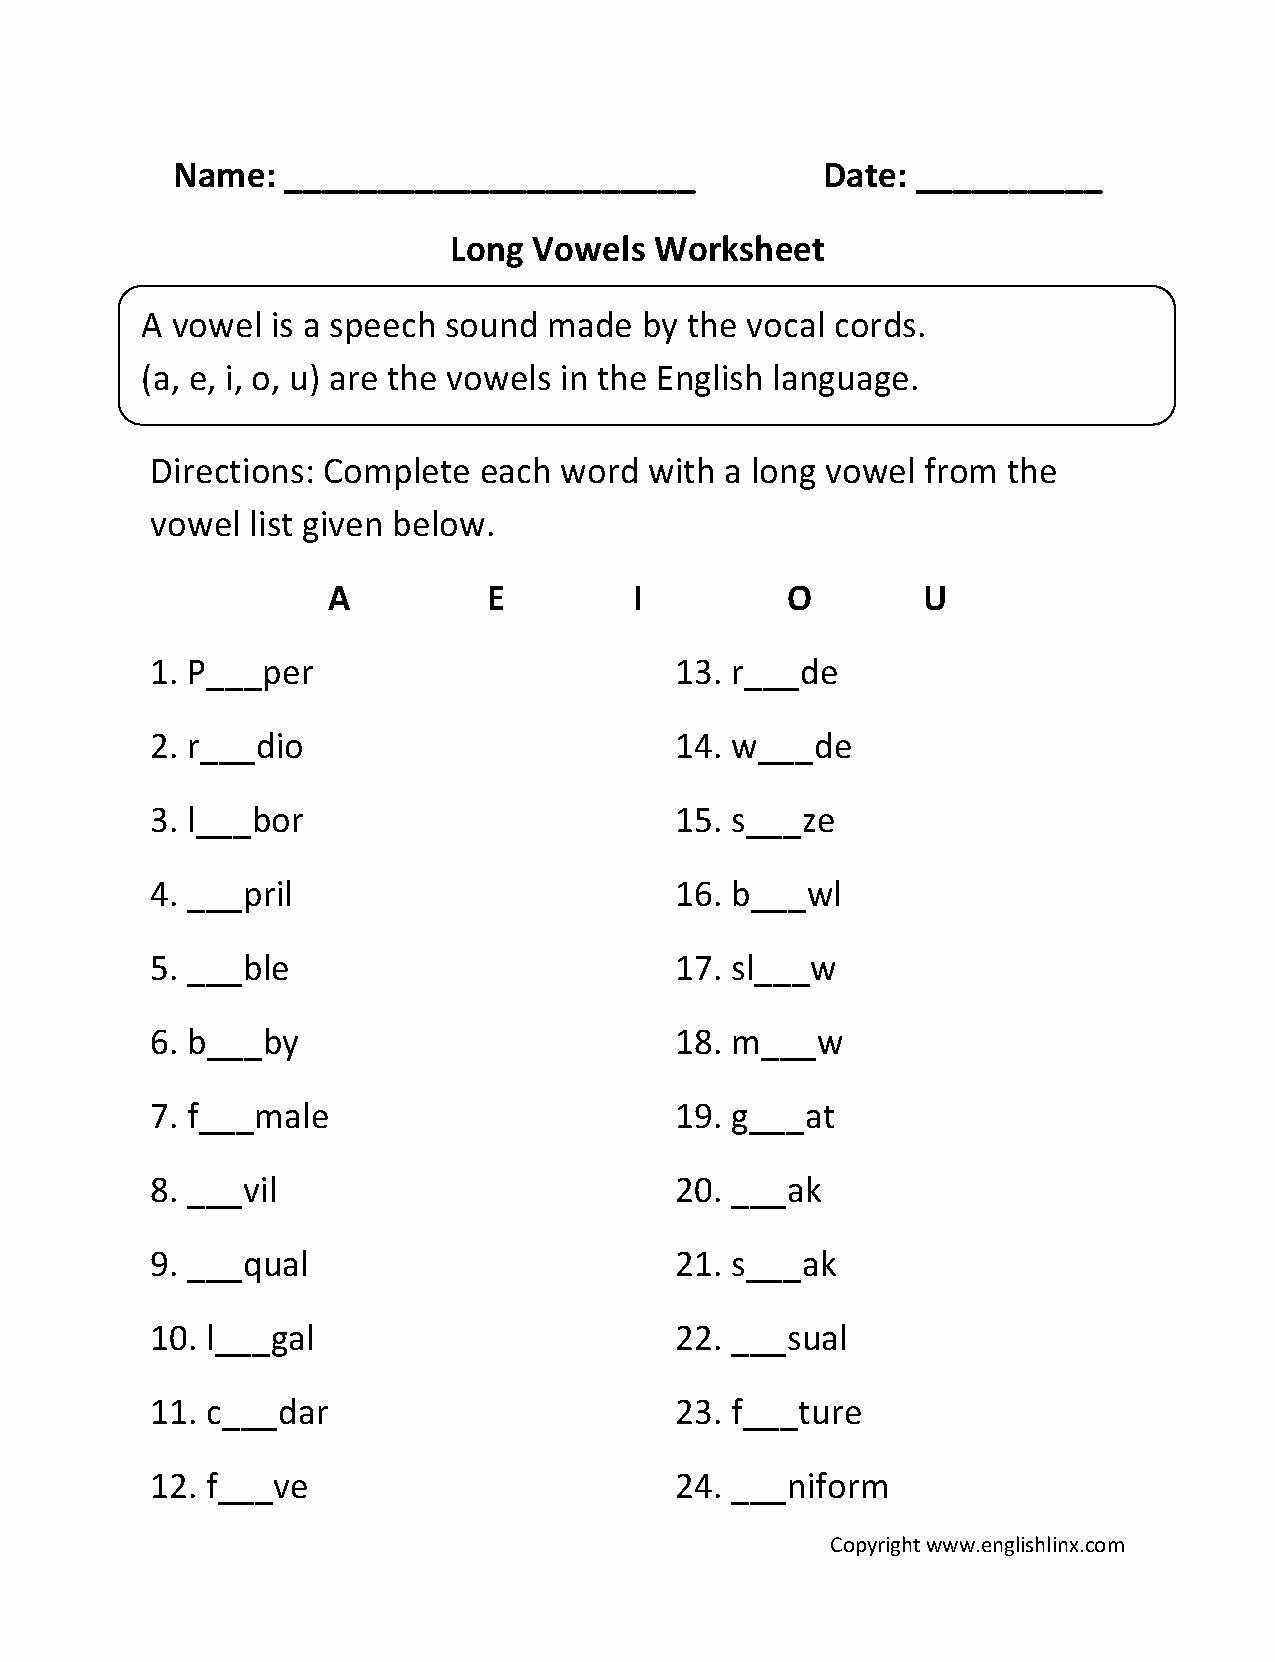 Long Vowel Worksheets Pdf Beautiful Vowel Worksheets